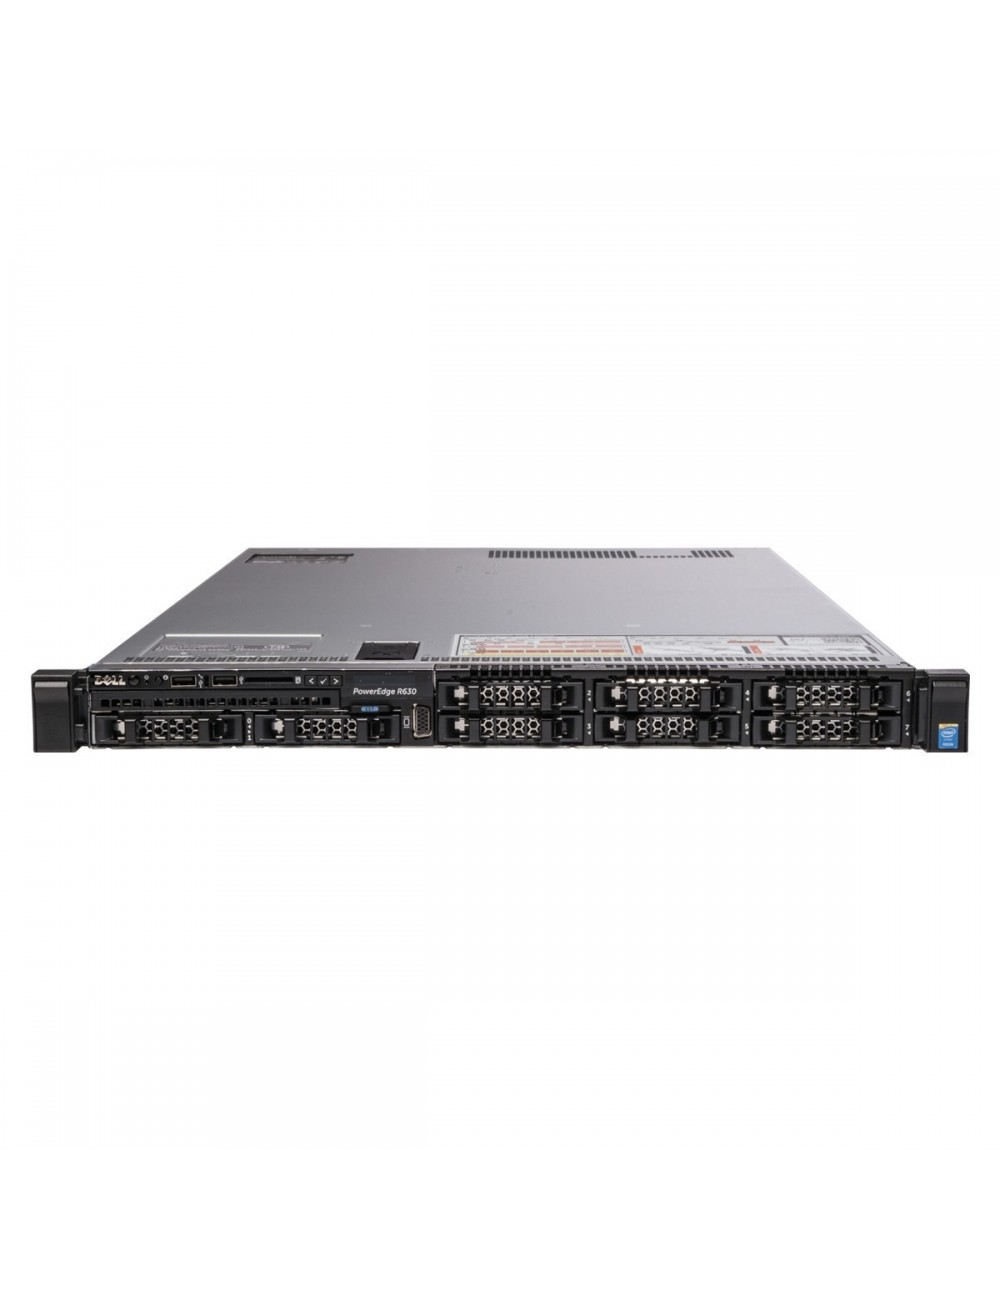 Dell PowerEdge R630 19" 1U Server 8x 2,5", 1x E5-2640 v3 8C, 128GB RAM, 3x 1,2TB 10k 12G SAS HDD, H730 1GB, 2x PS, RACK KIT